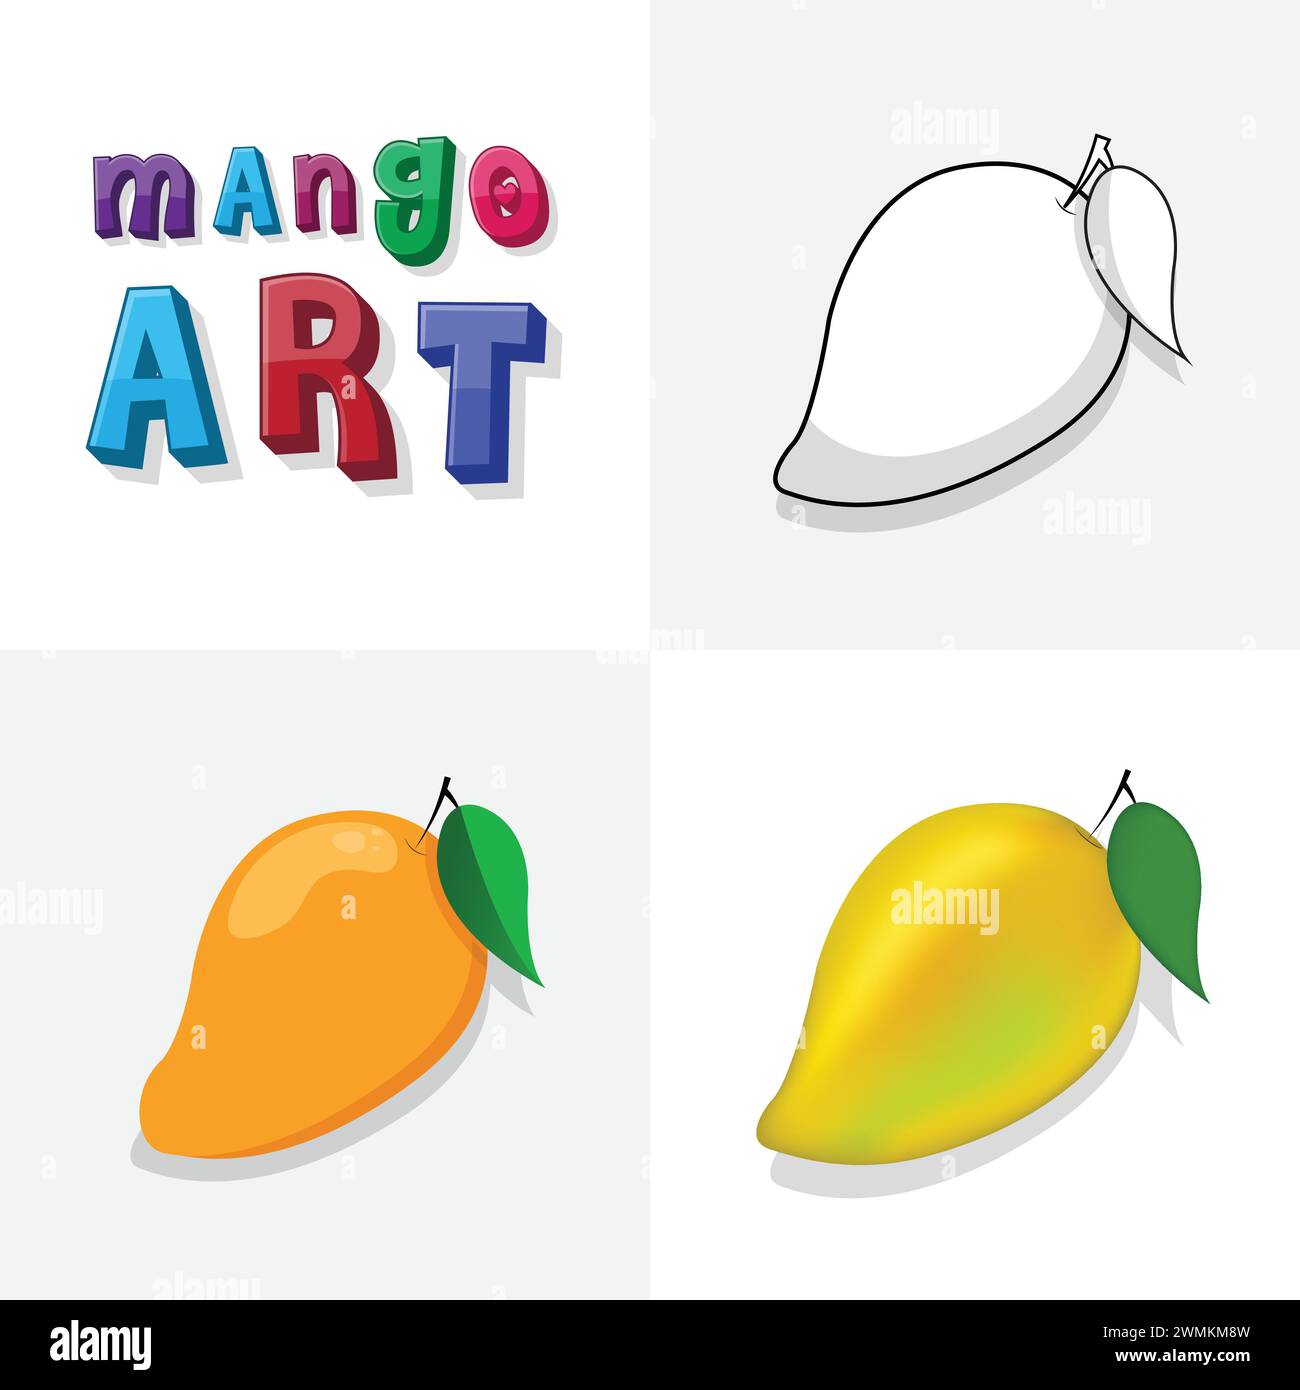 Croquis d'art de mangue, page à colorier, illustration plate et réaliste de fruits de mangue pour les enfants Illustration de Vecteur